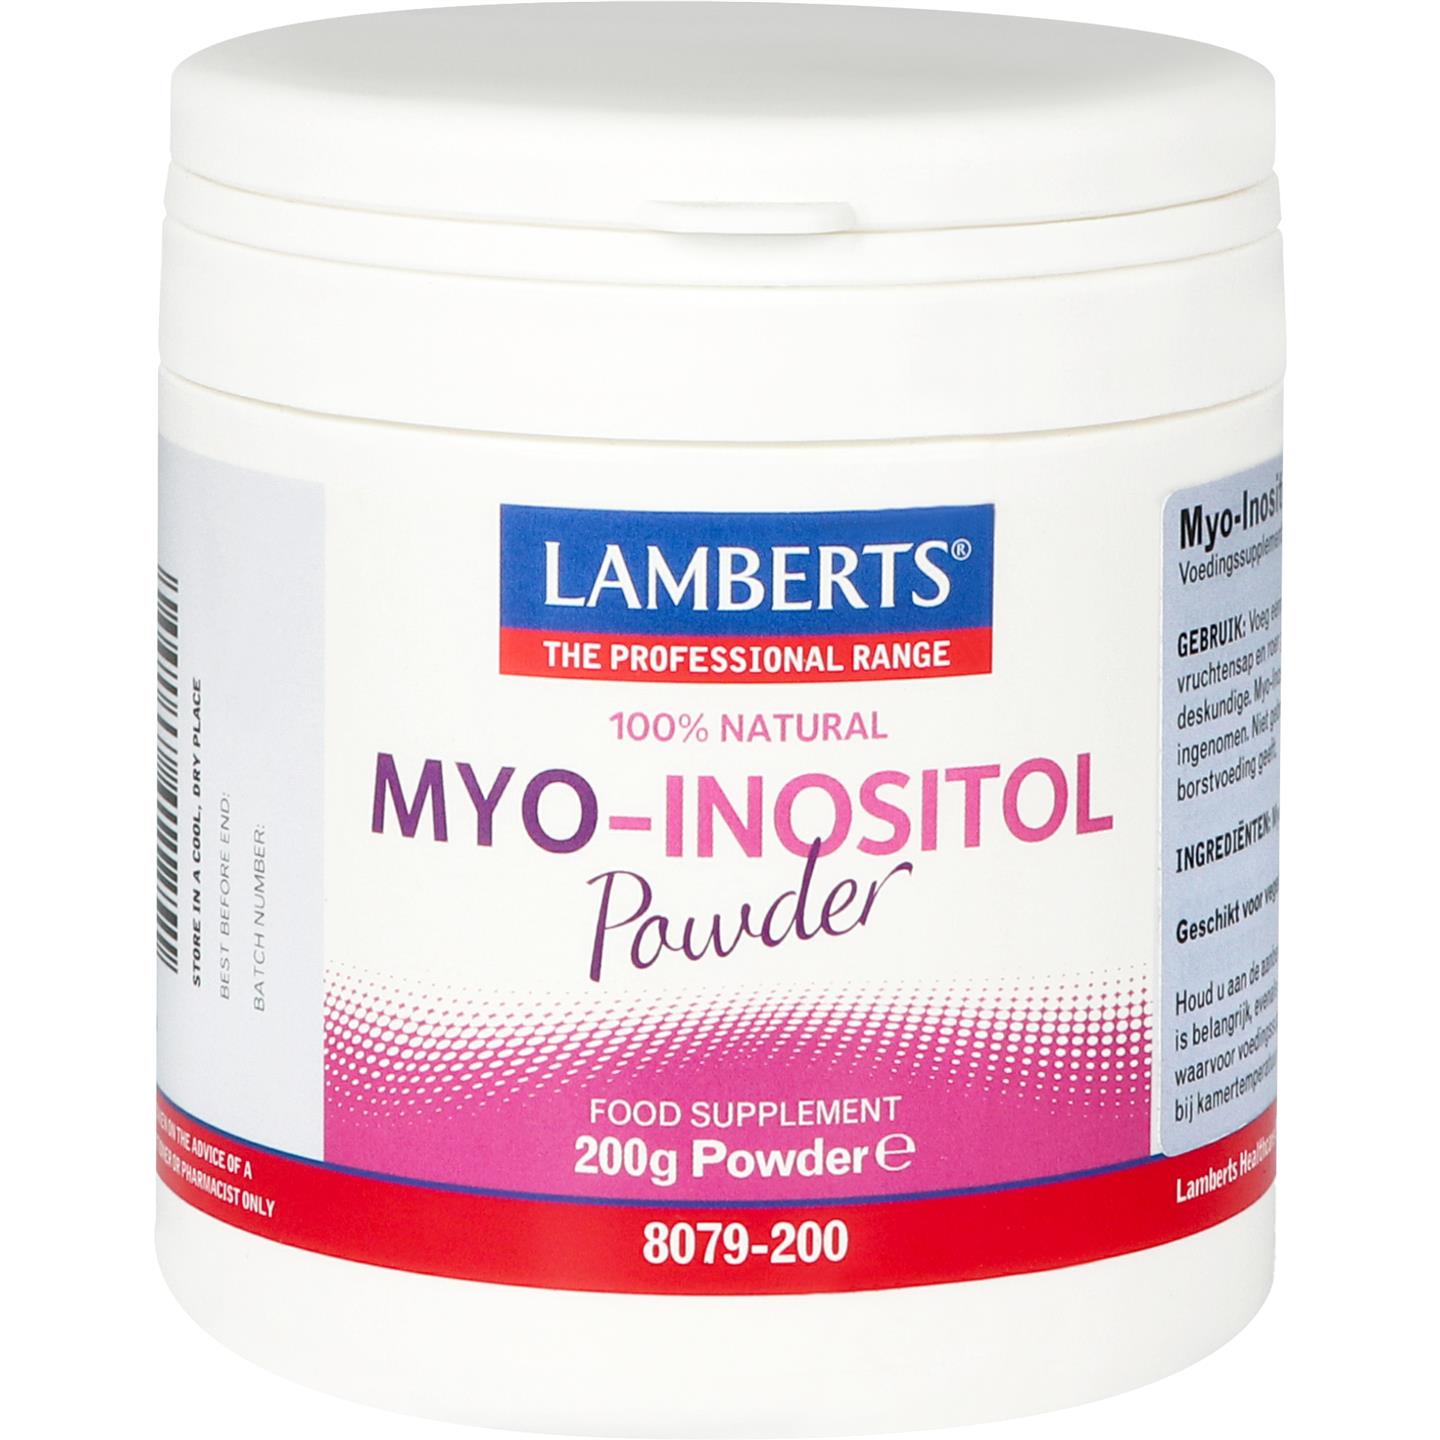 MYO-inositol